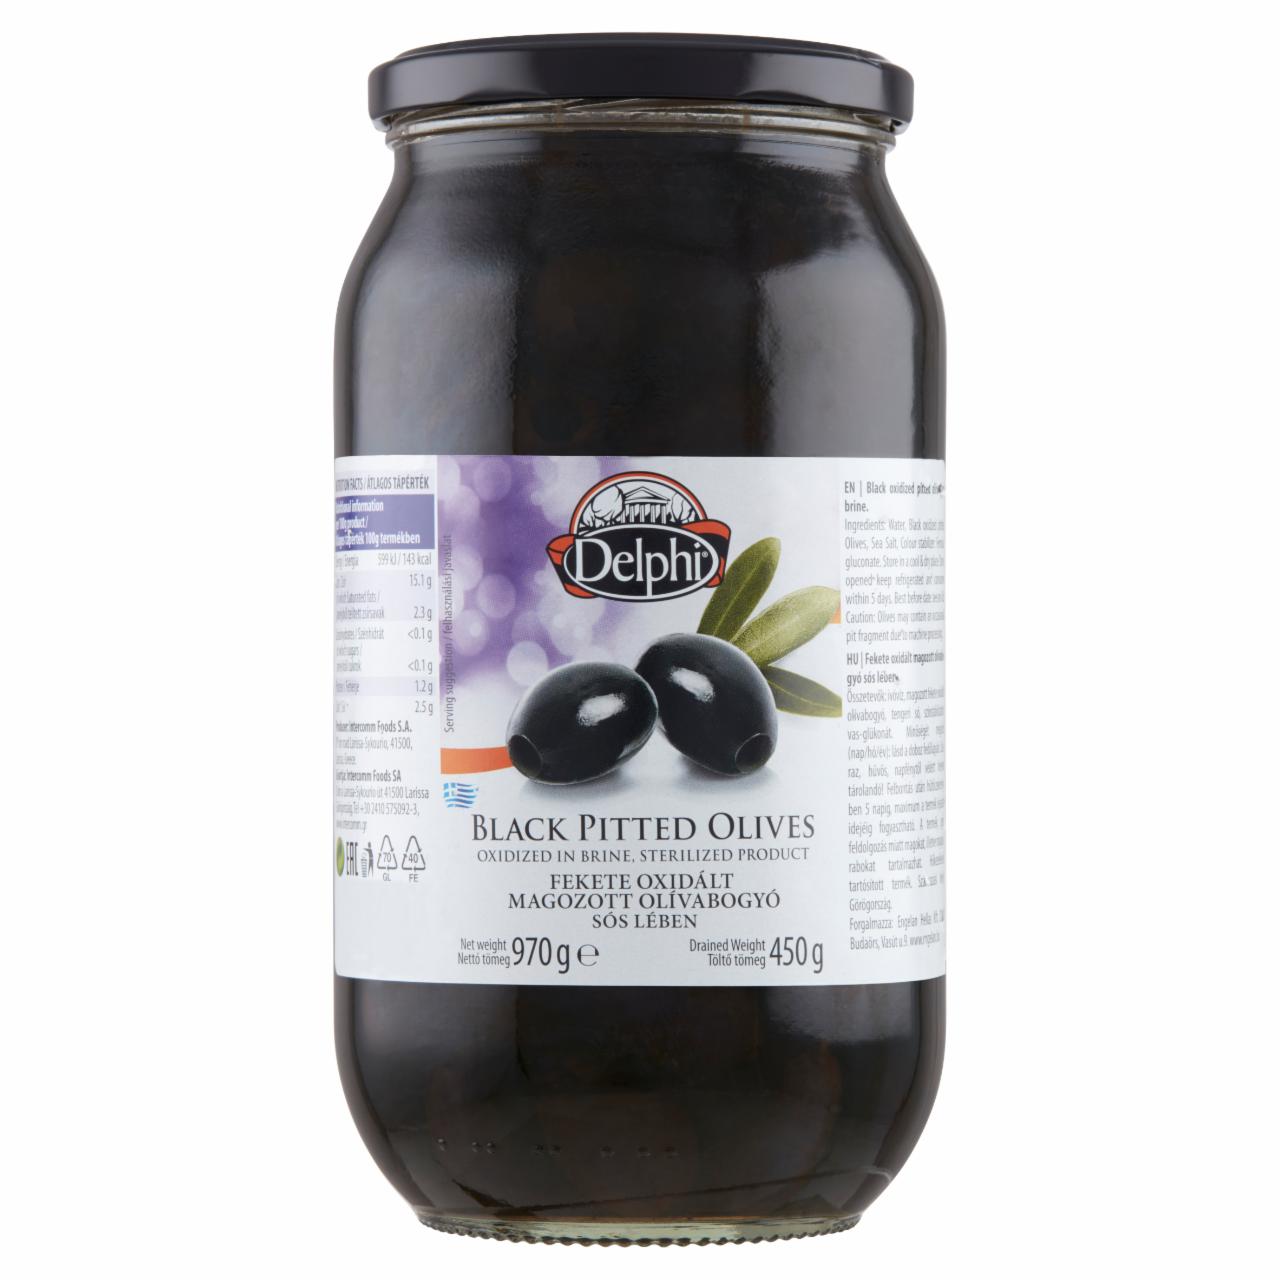 Képek - Delphi fekete oxidált magozott olívabogyó sós lében 970 g